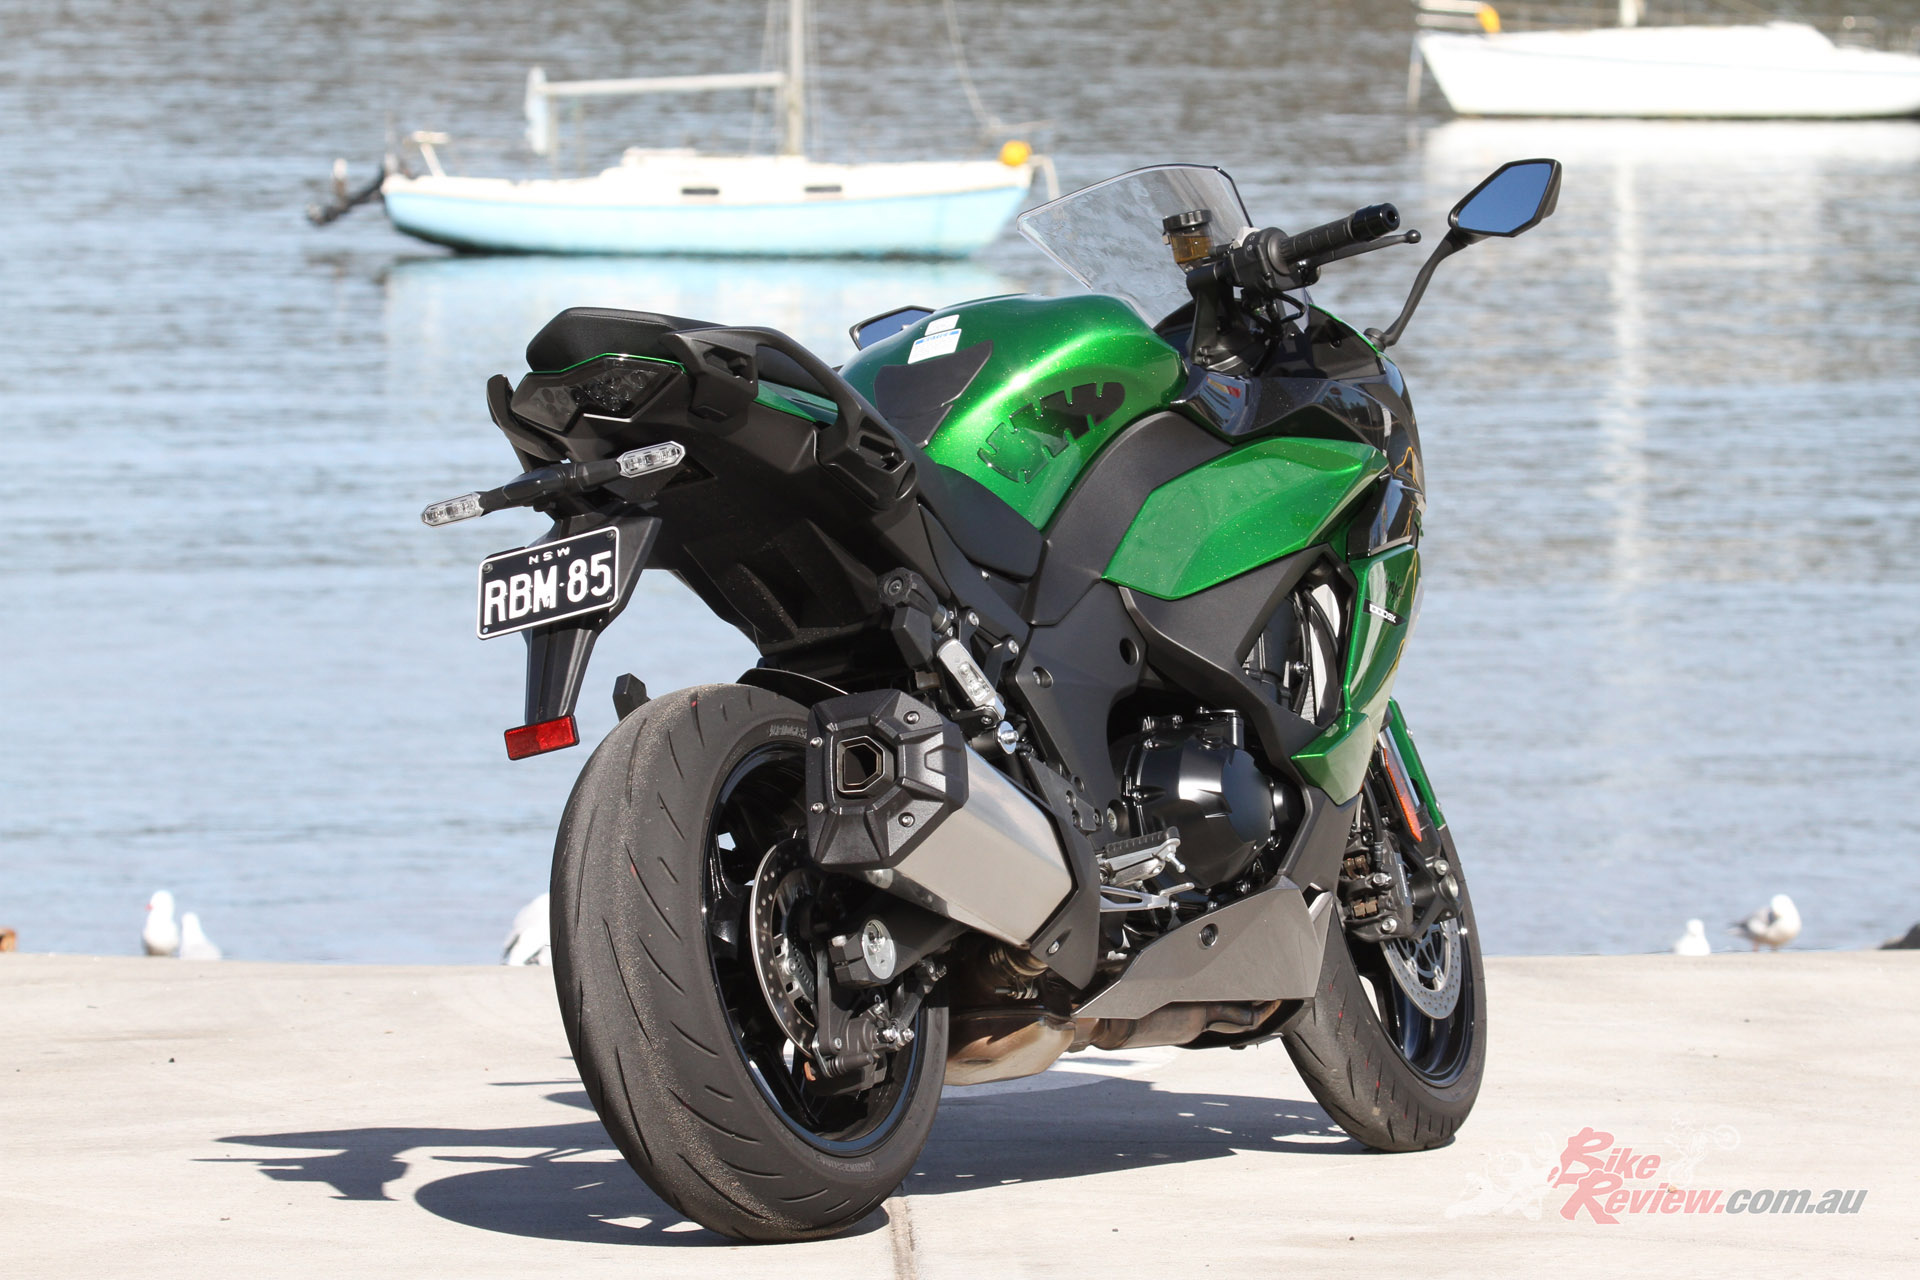 2021 Kawasaki Ninja 1000 SX Ergonomics and Rider Fit 